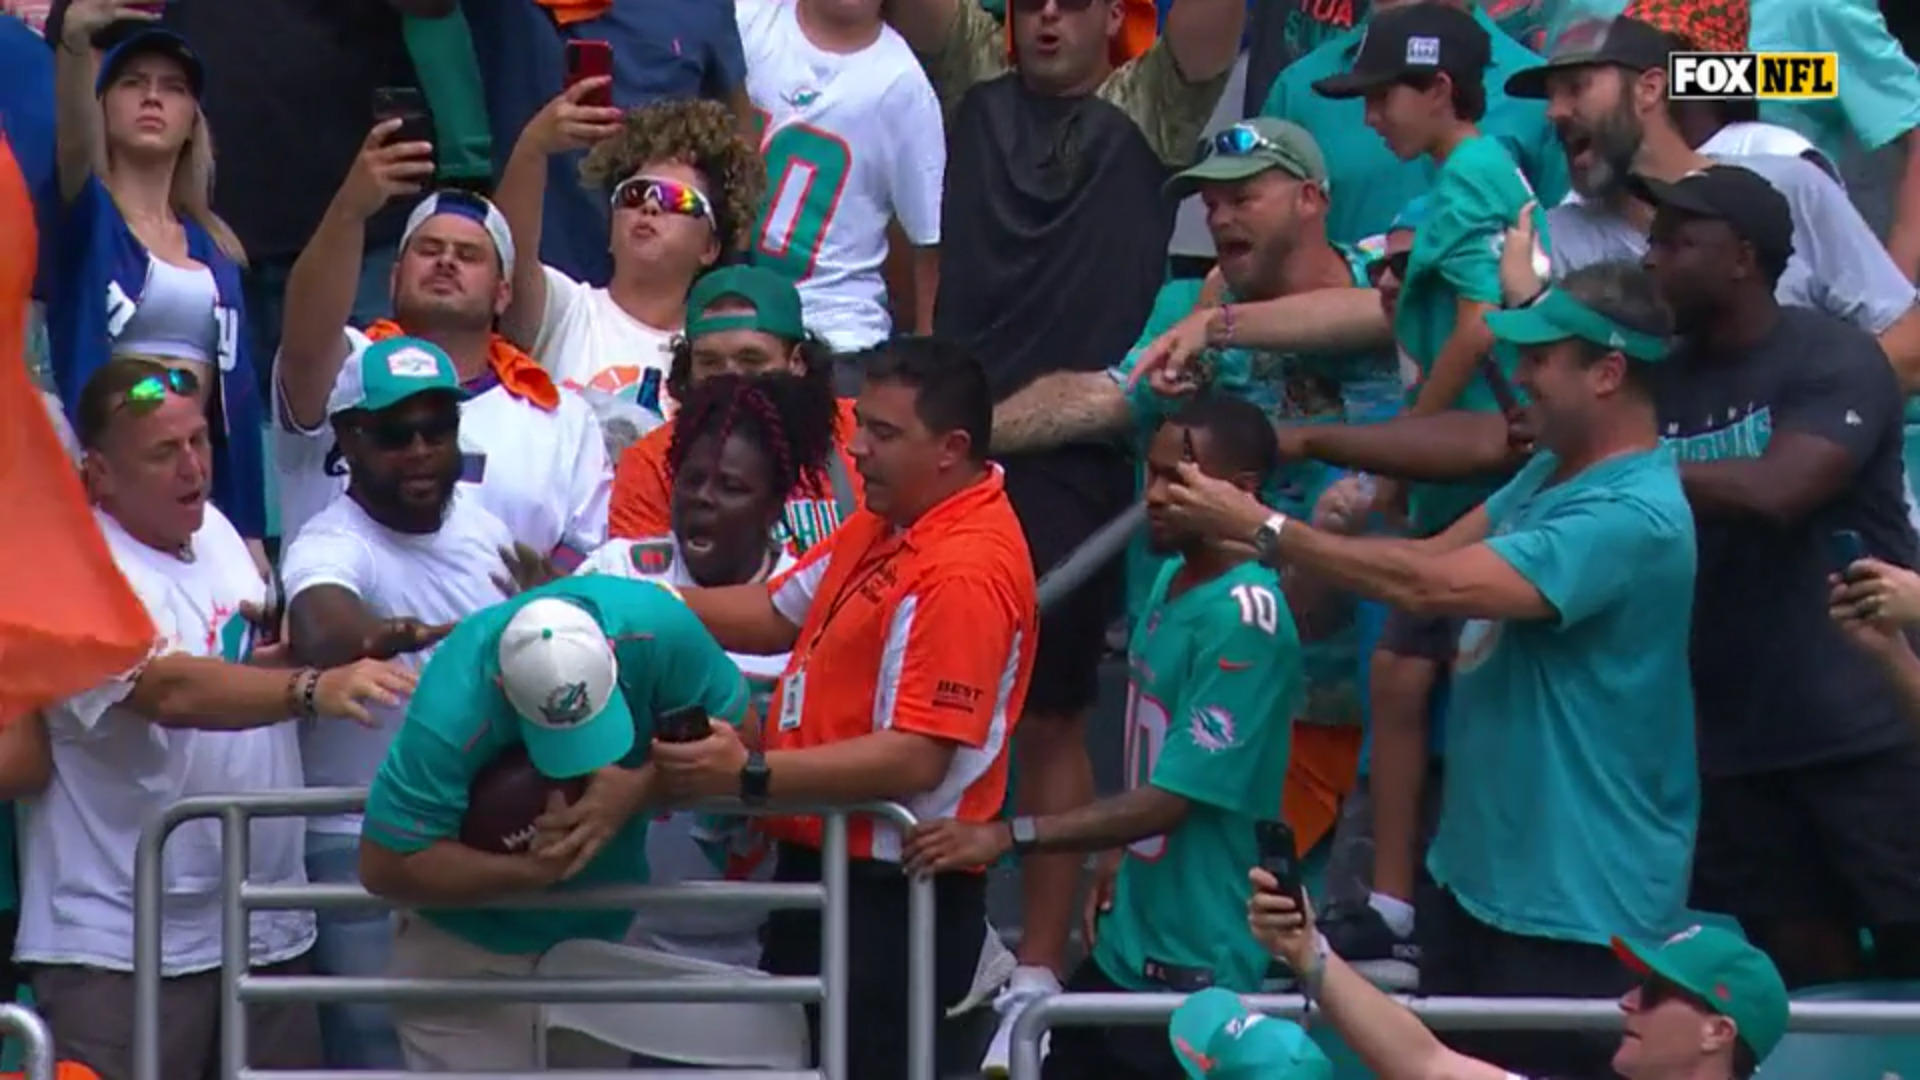 Hill schenkt seiner Mama seinen Touchdown-Ball Süße Geste von Dolphins-Star